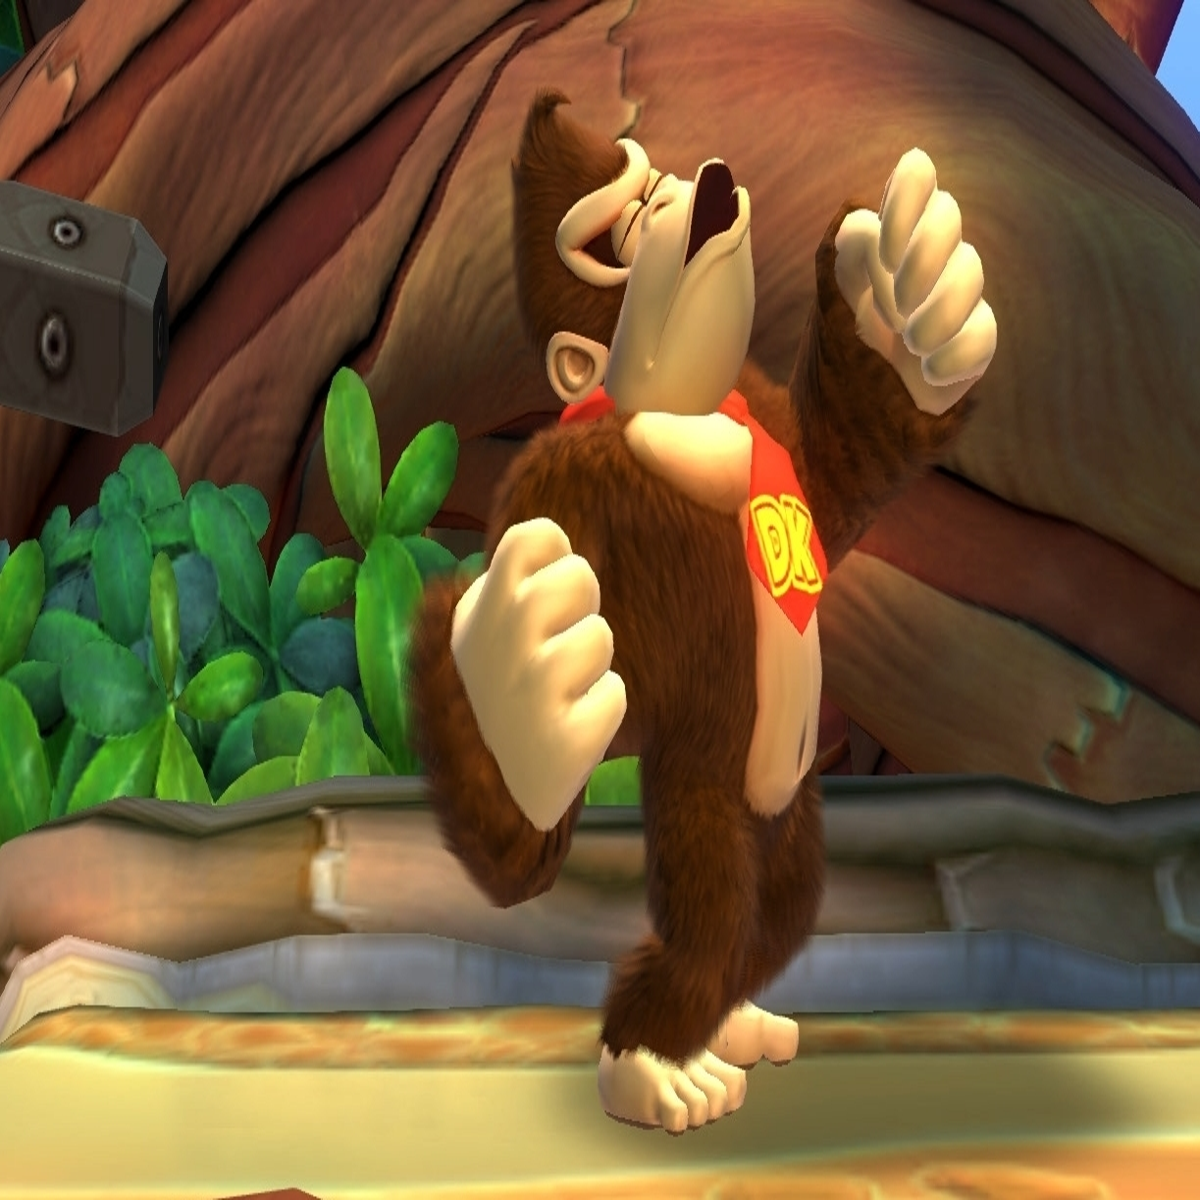 Donkey Kong: Nintendo pode desenvolver novo jogo e uma animação